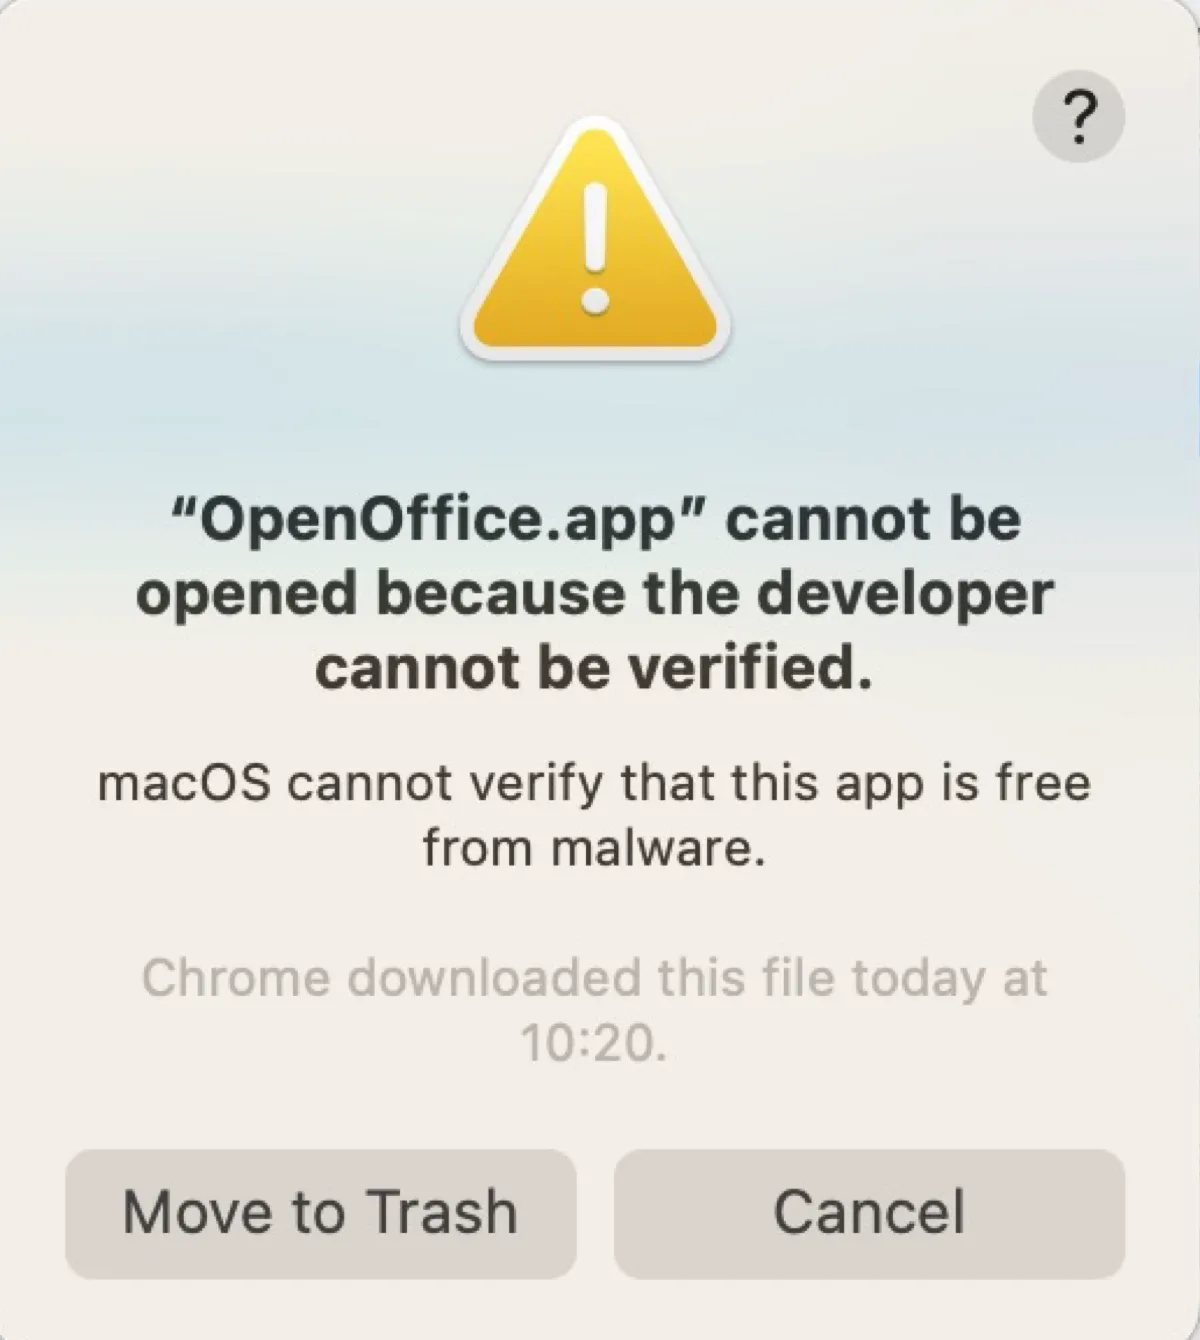 Die Fehlermeldung besagt, dass die App nicht geöffnet werden kann, weil der Entwickler nicht überprüft werden kann